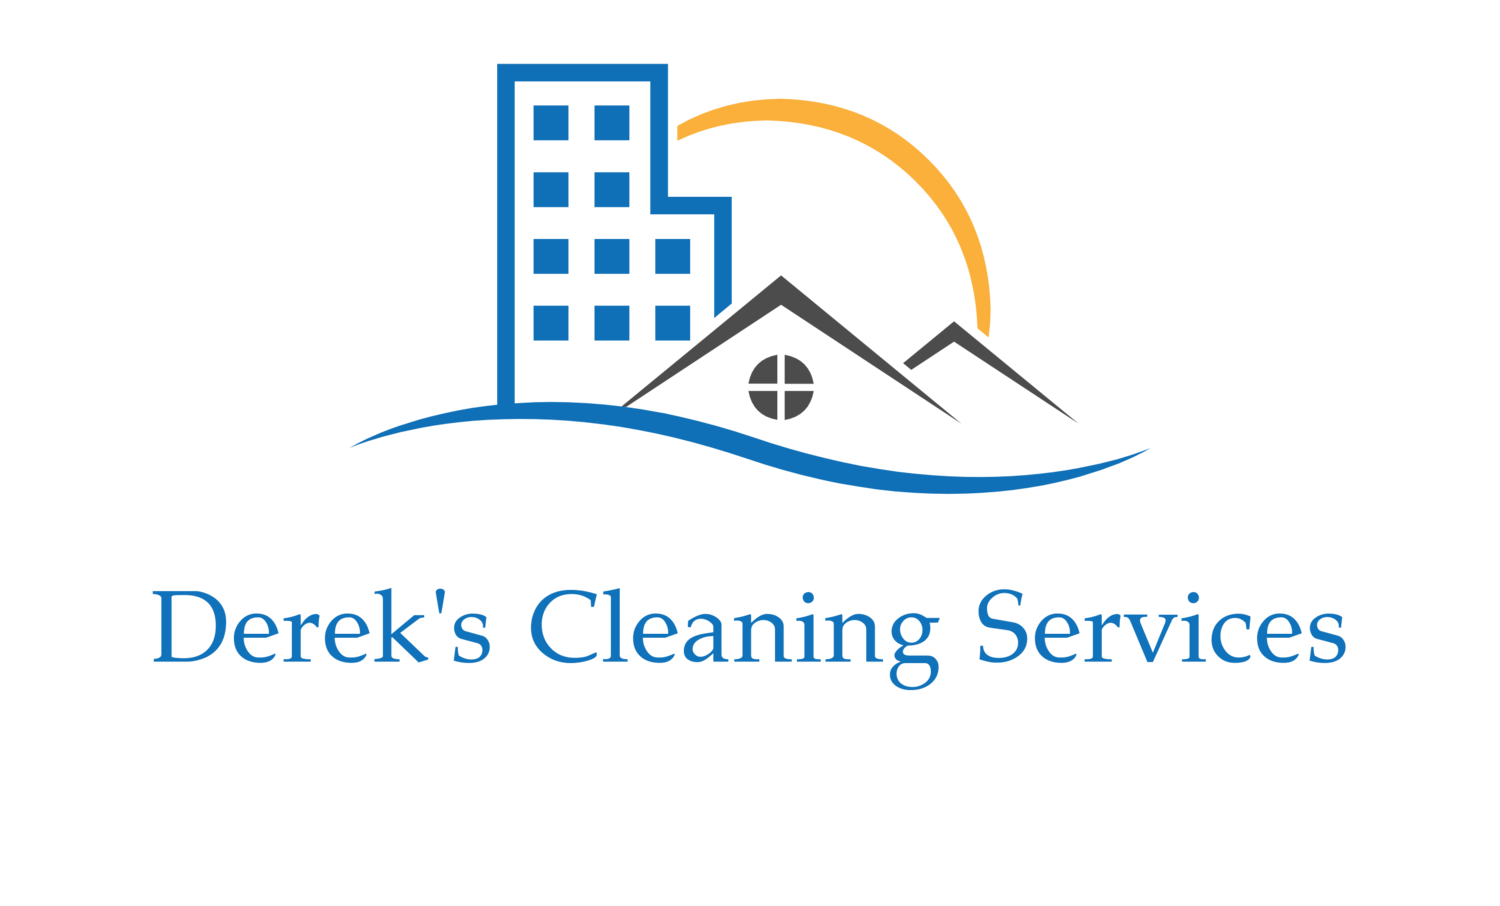 Derek's Cleaning Services